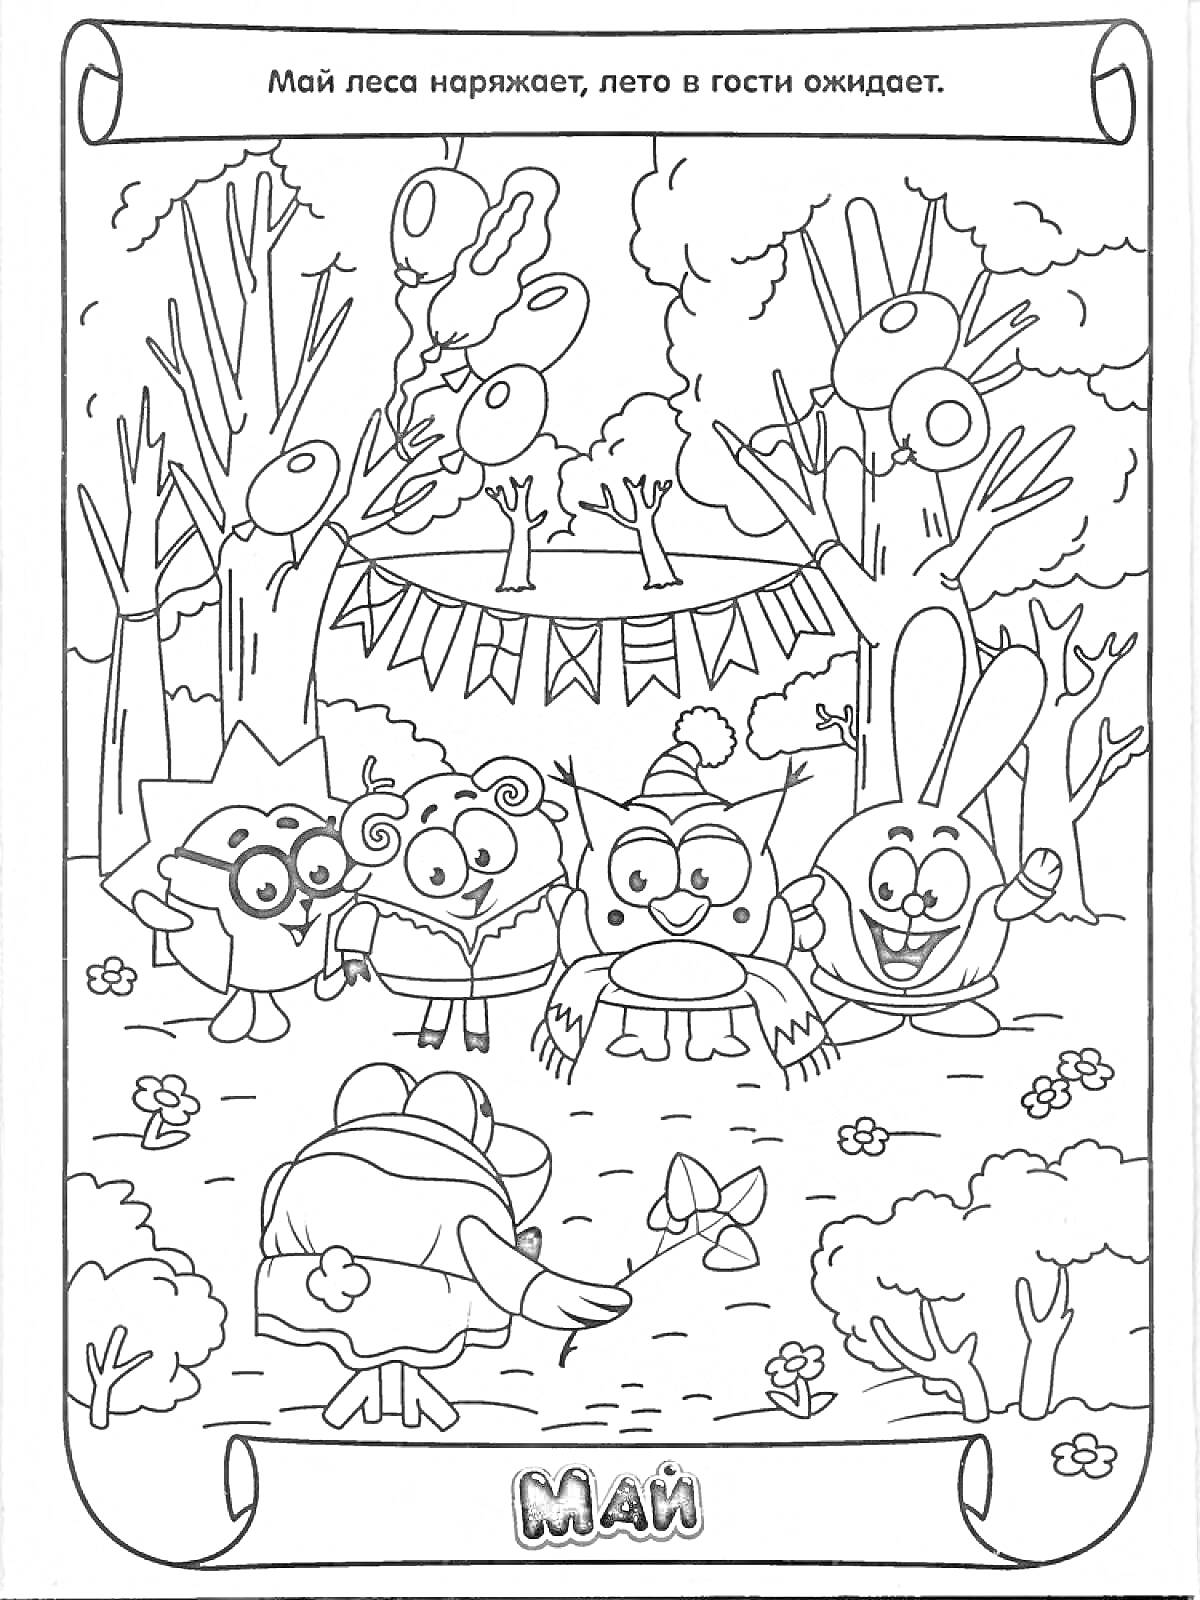 Раскраска Май в лесу с пятью персонажами, цветы, деревья, гирлянды и воздушные шары, центральный персонаж с бабочкой и подарком